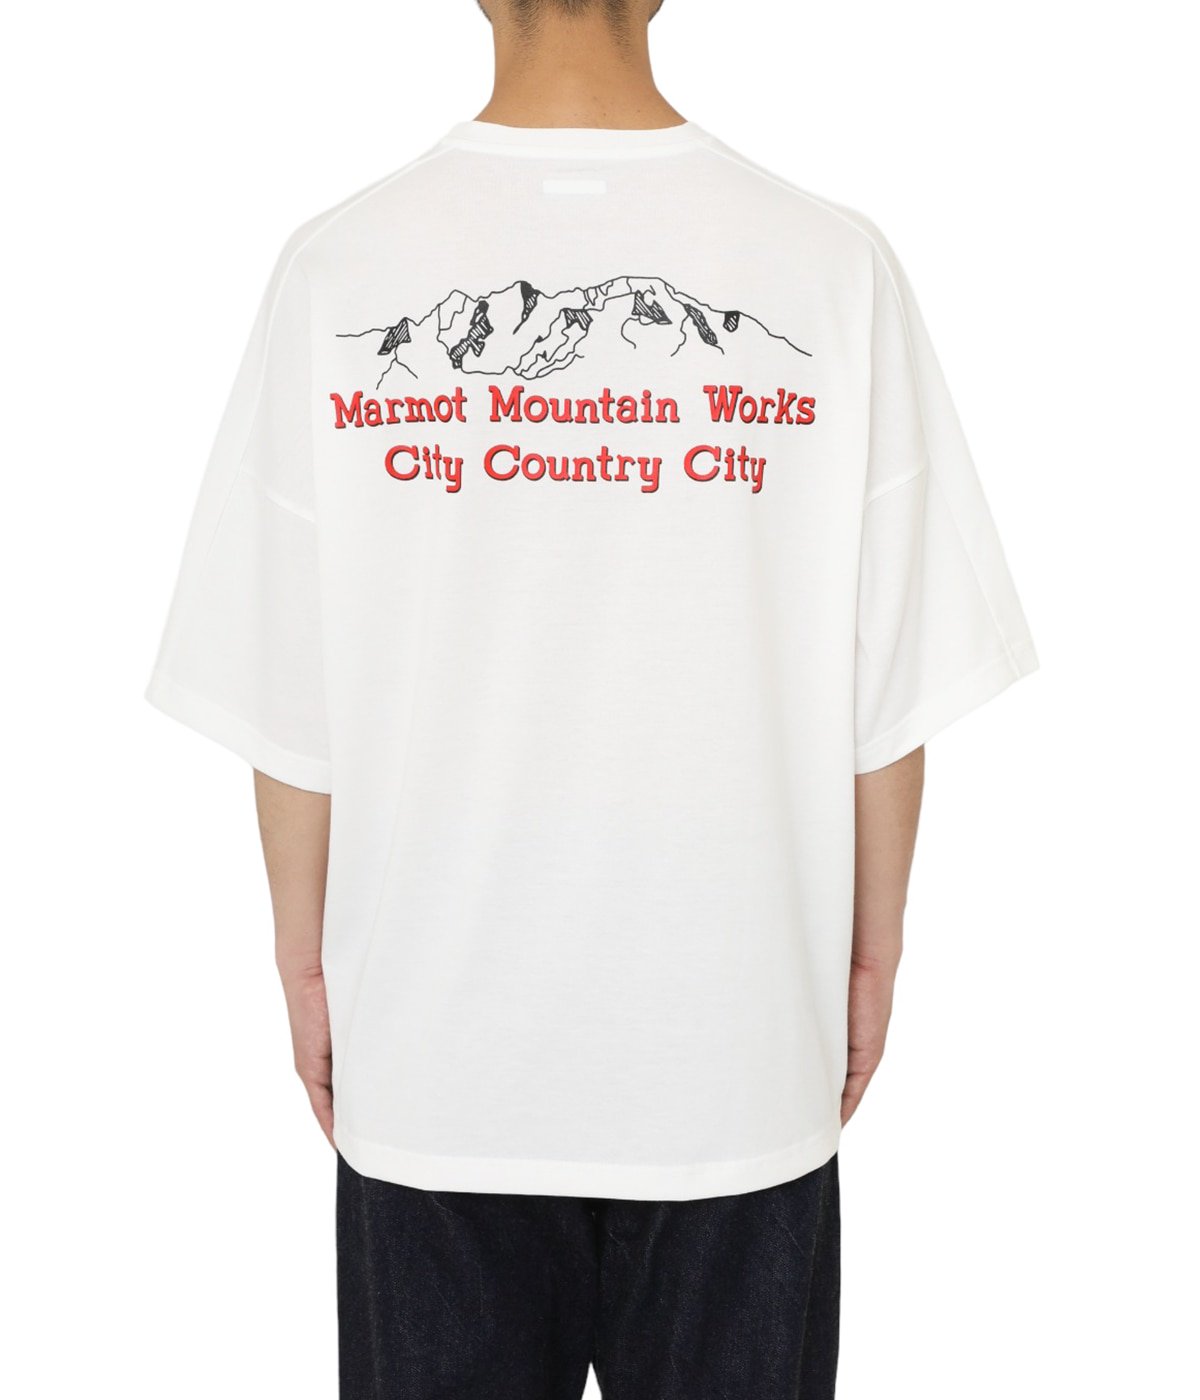 CITY COUNTRY CITY Marmot ビッグサイズ Tシャツ - Tシャツ/カットソー